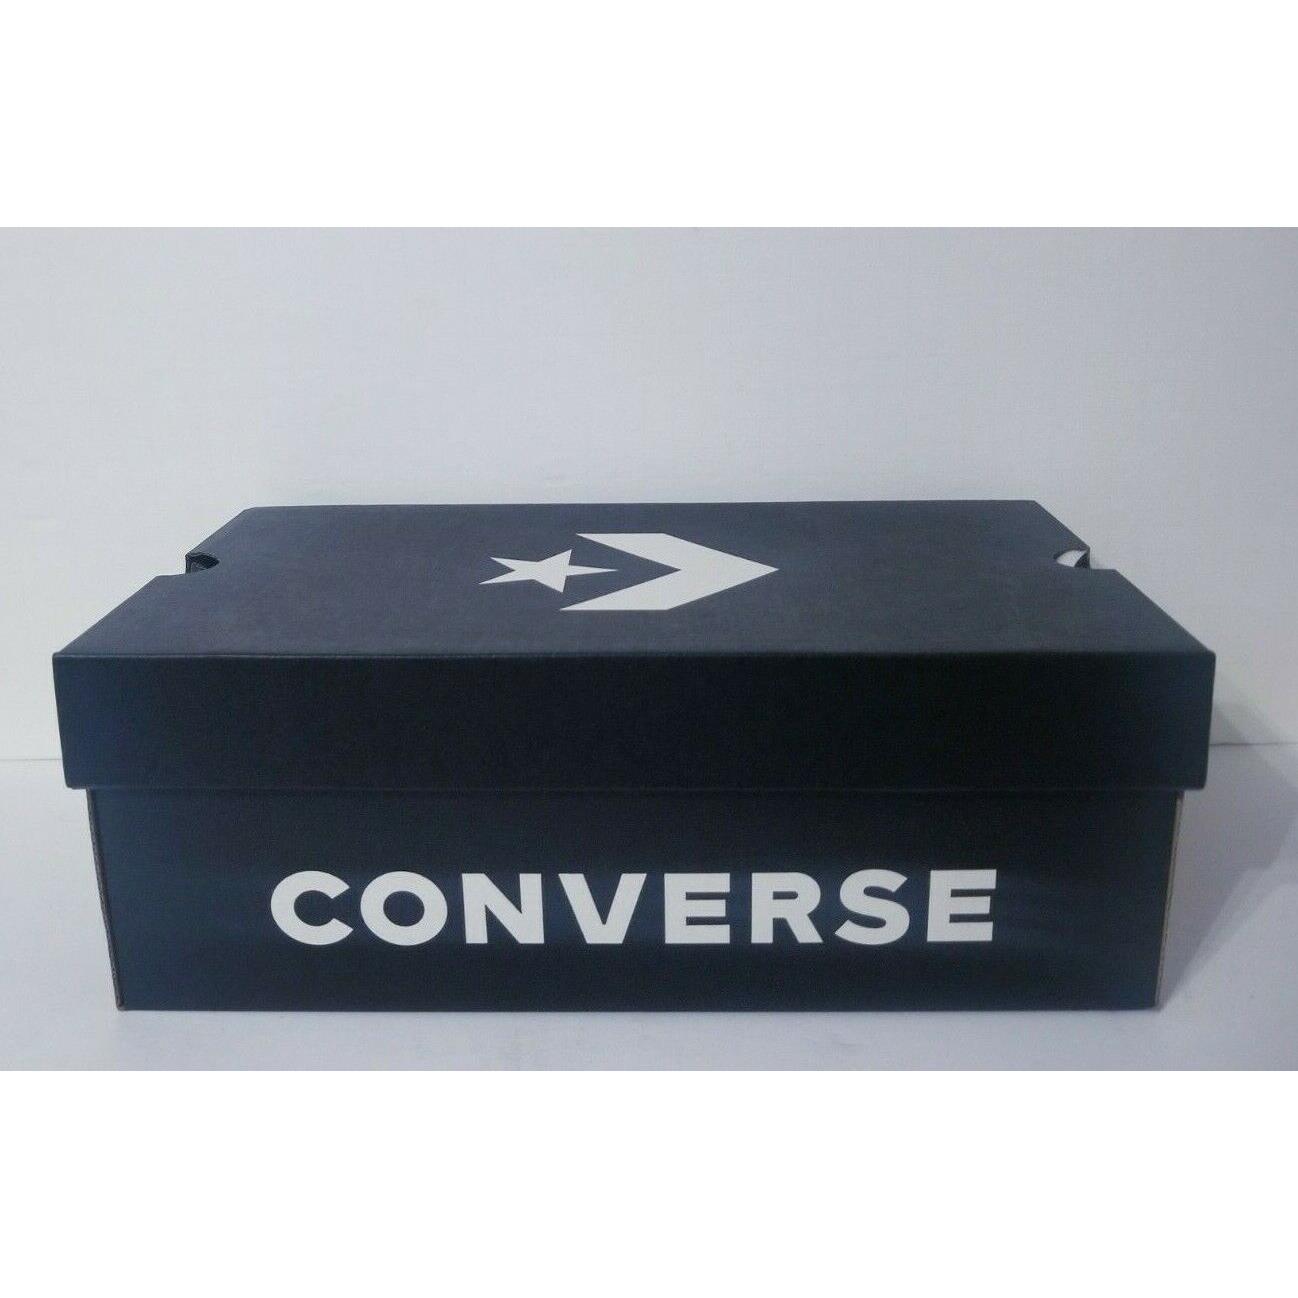 Converse shoes  - Black 5